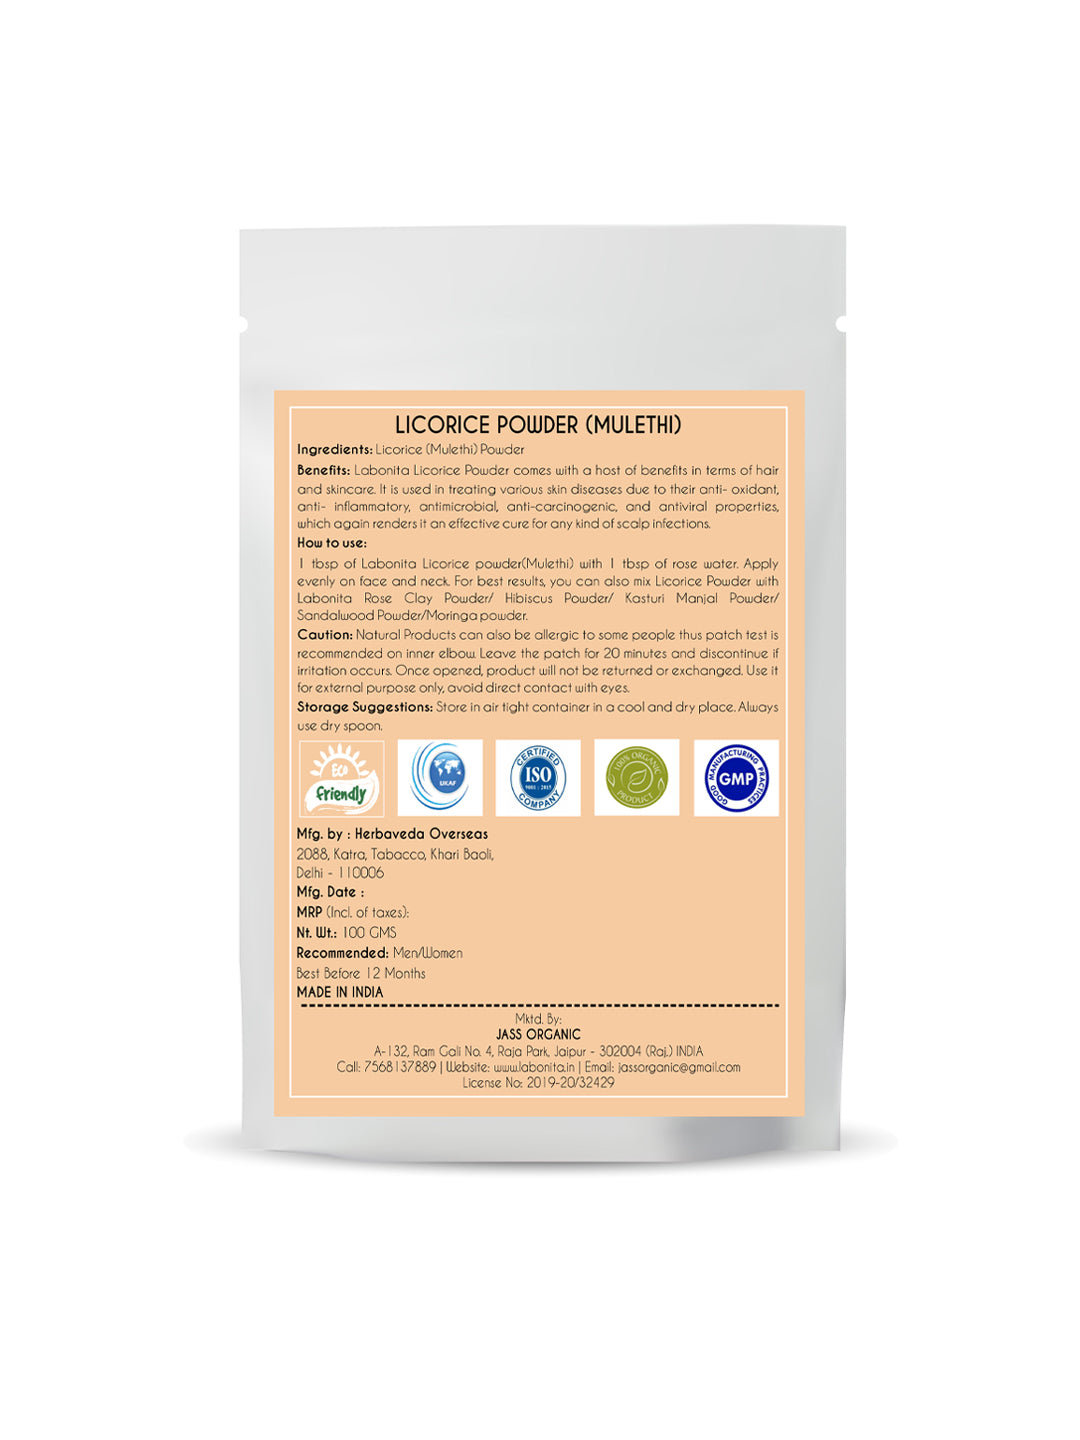 Licorice (Mulethi) Powder